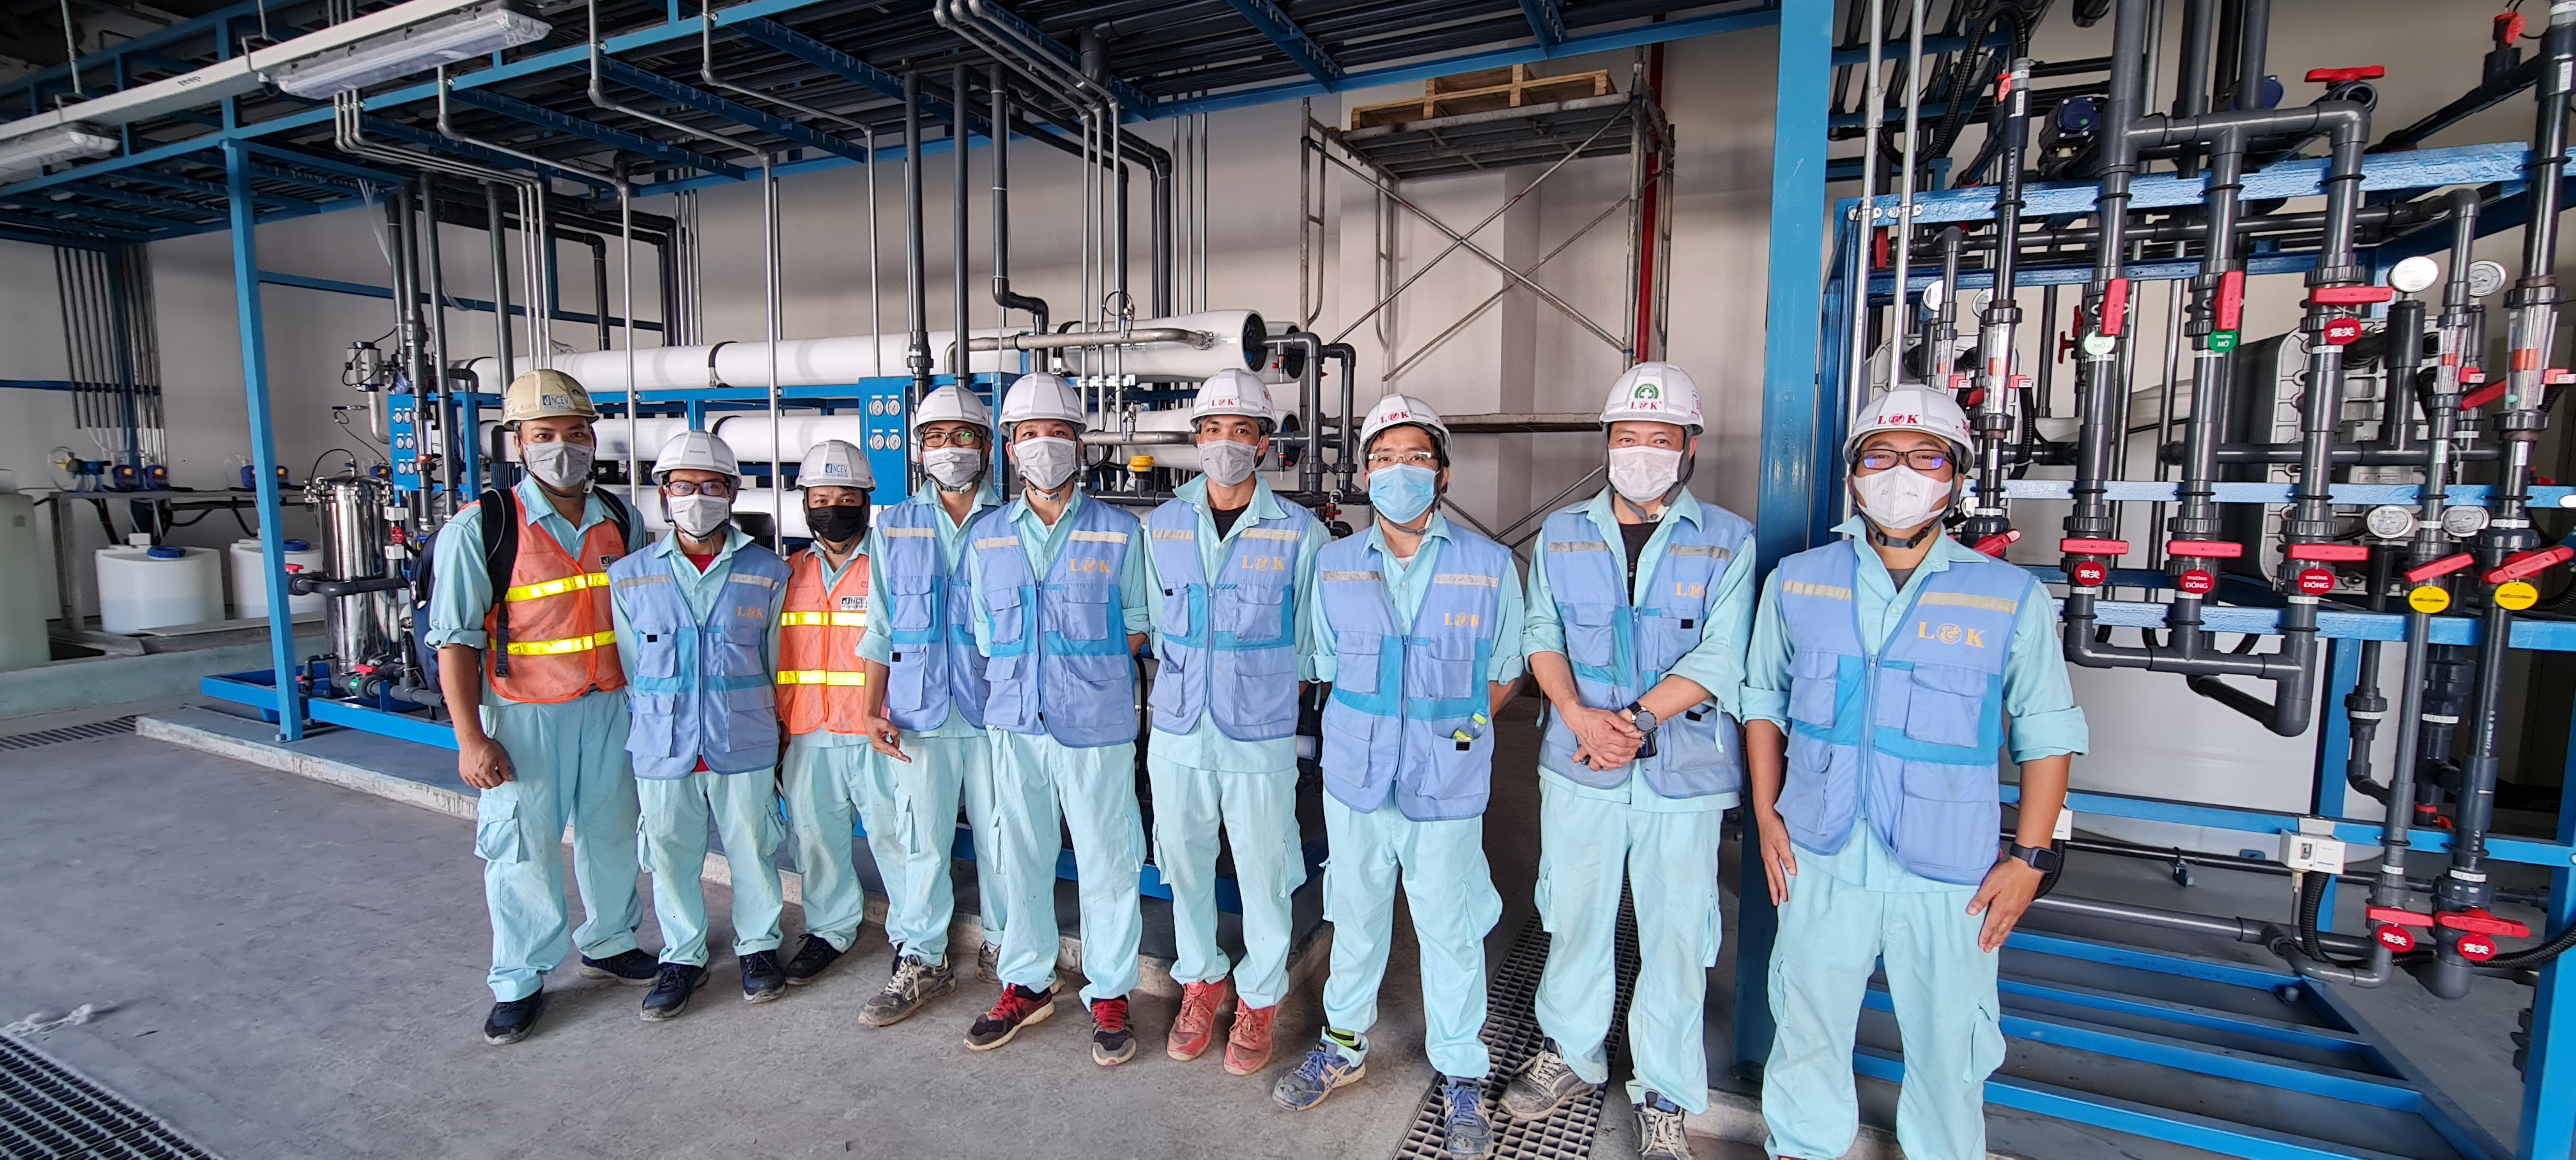 Công ty Nakagawa hoàn thành các hệ thống xử lý môi trường tại Dự án Nhà máy USI - Hải Phòng